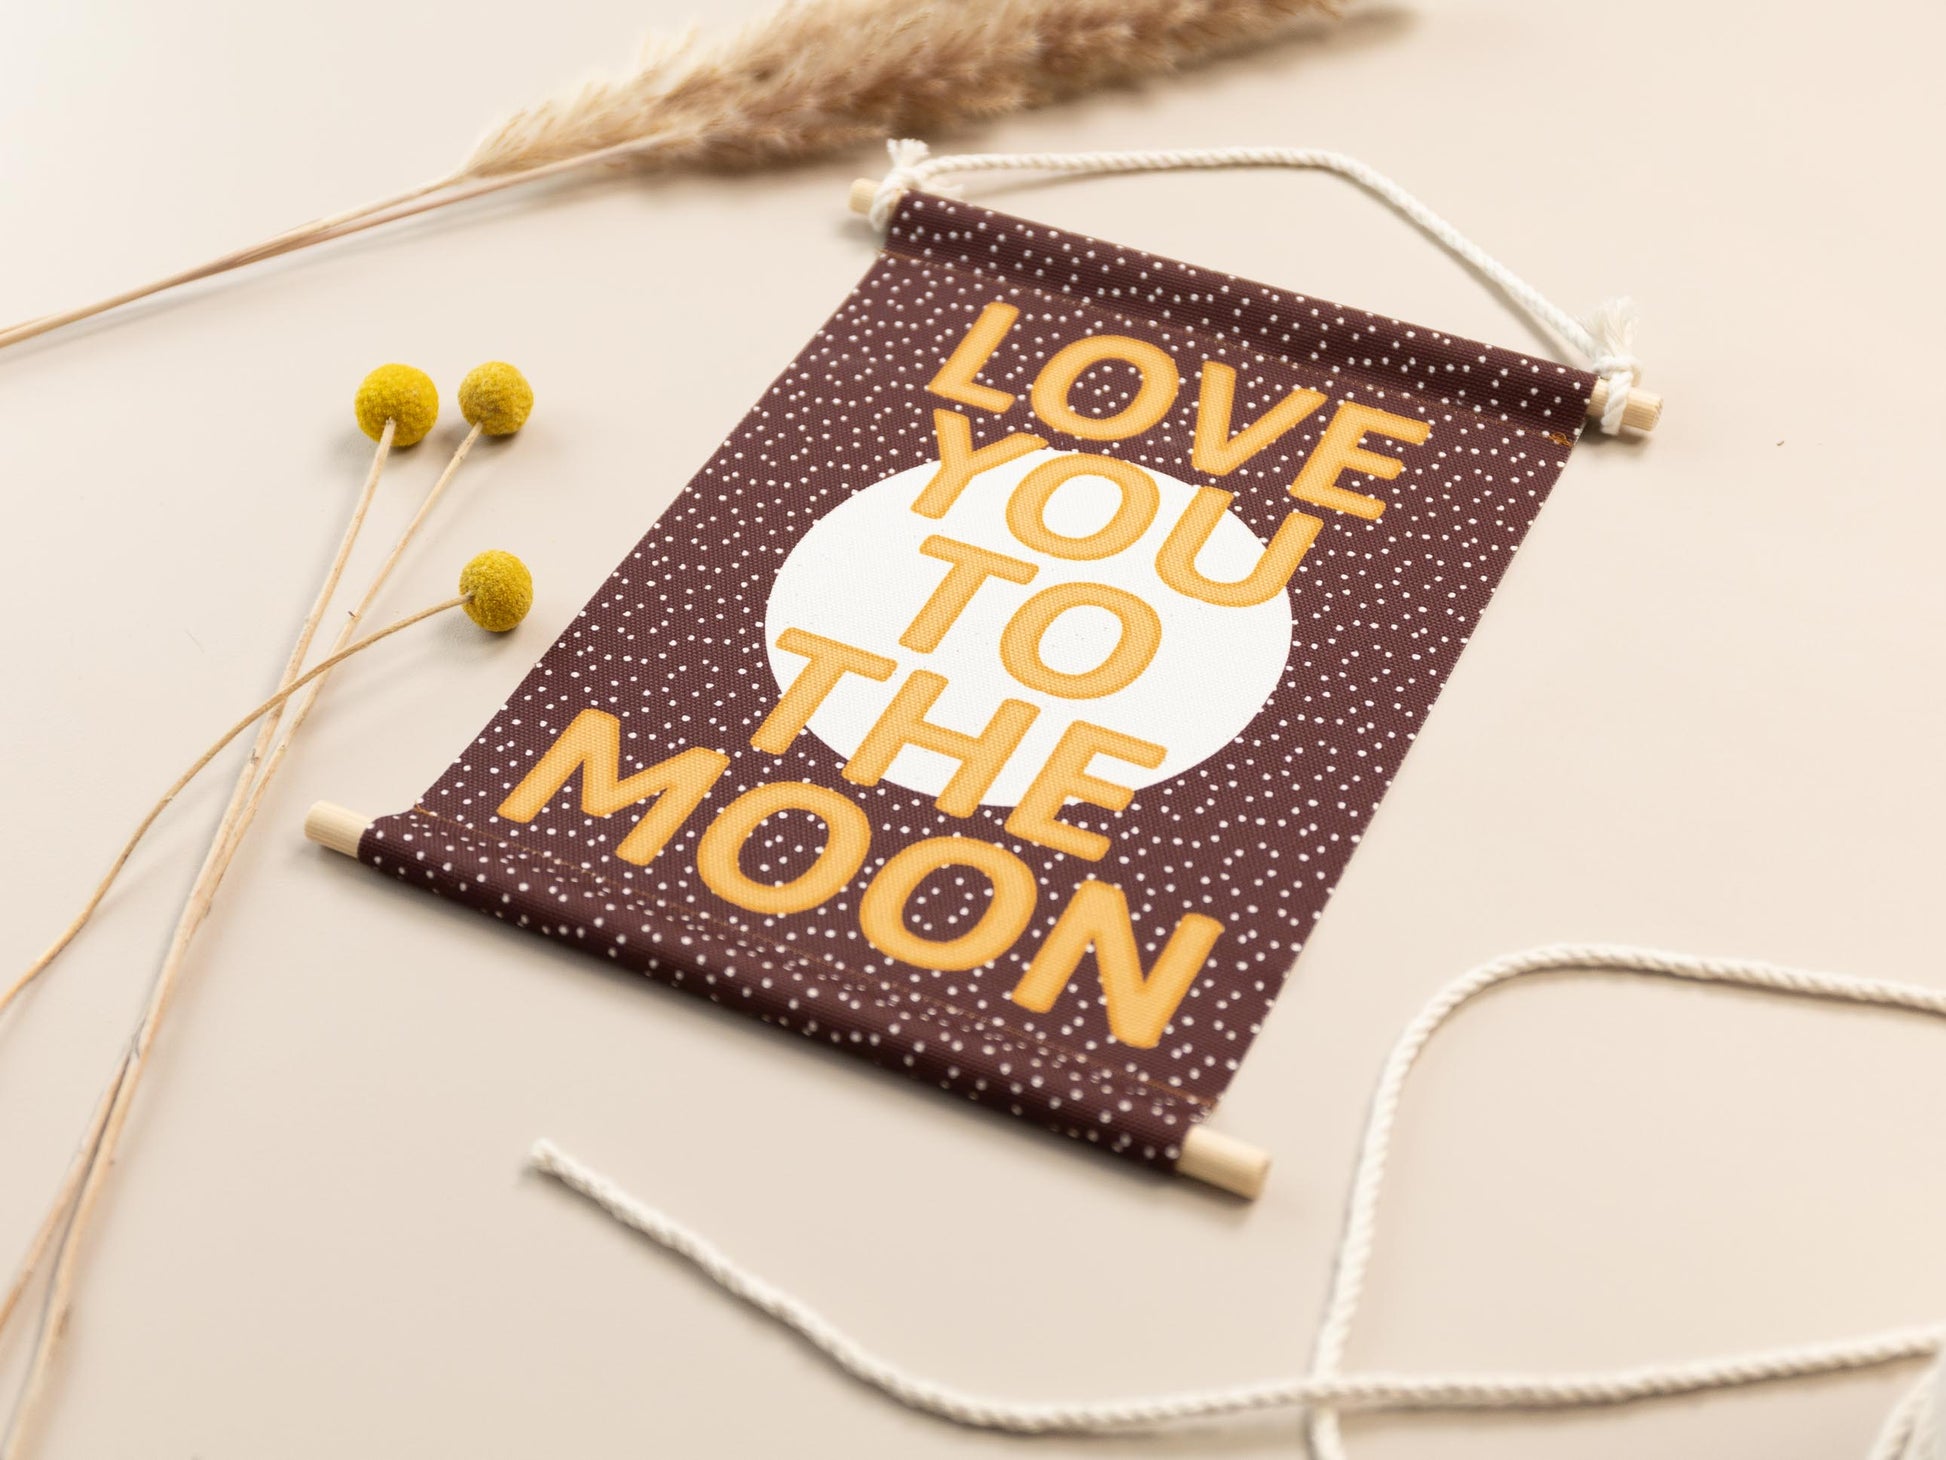 Love You To The Moon Stoffwimpel für das Kinderzimmer